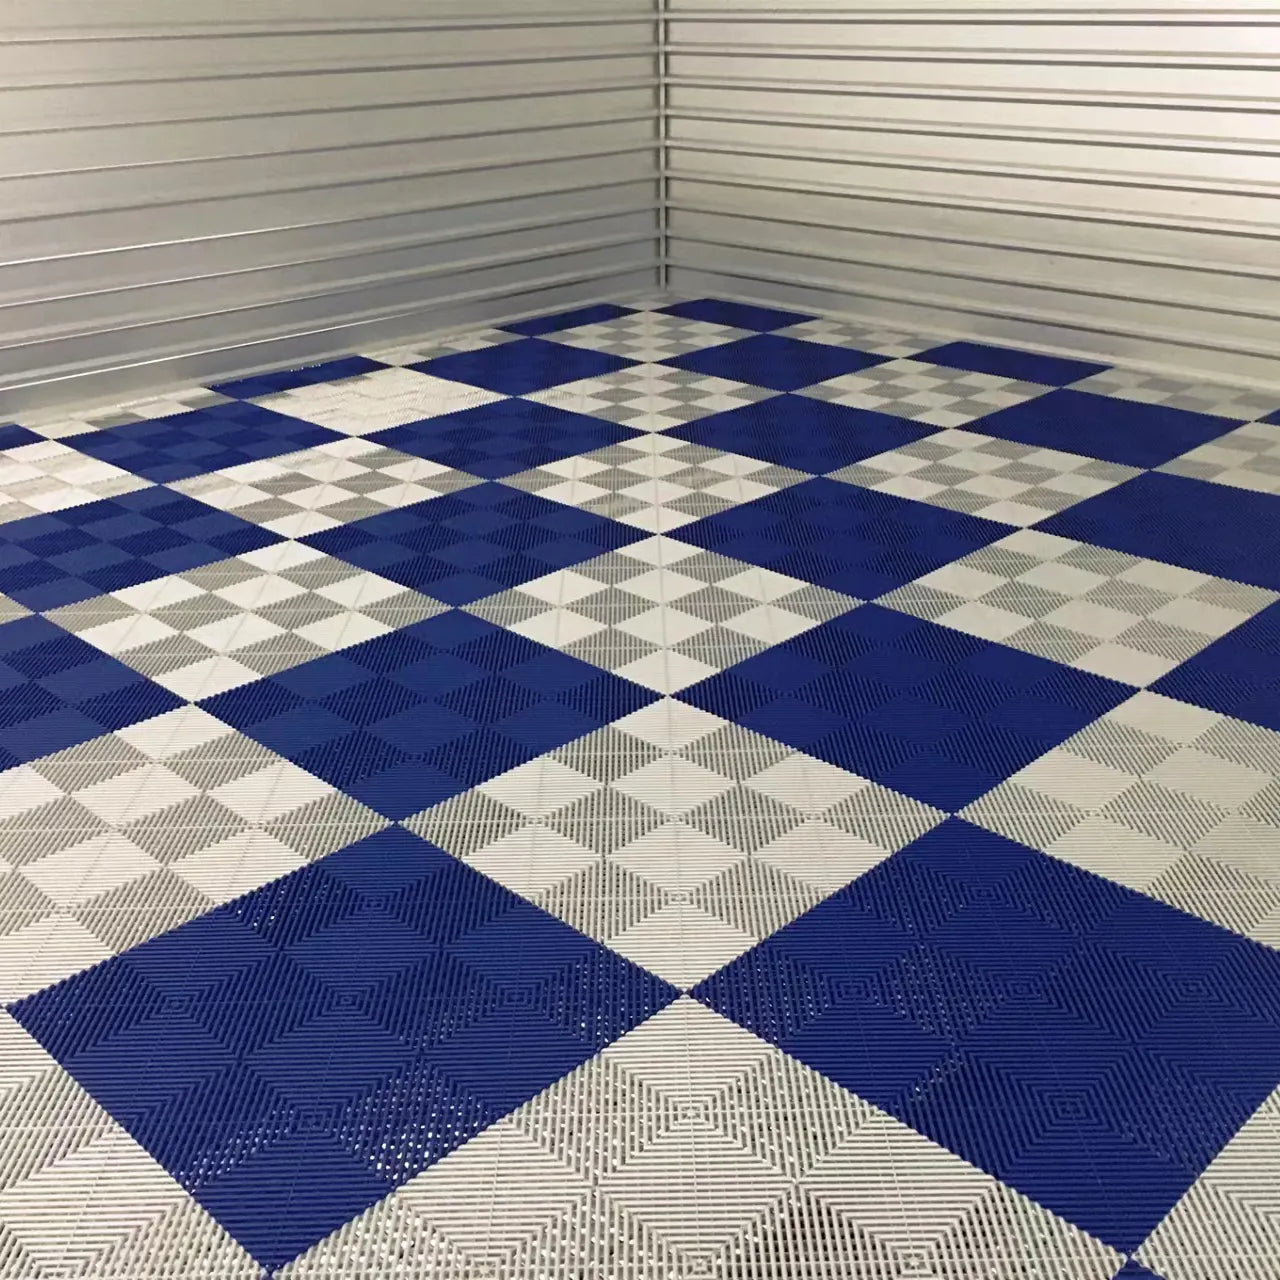 Floor Tiles HomeHarmony 40x40x1.8 cm - 32m2 Package of 200 pcs